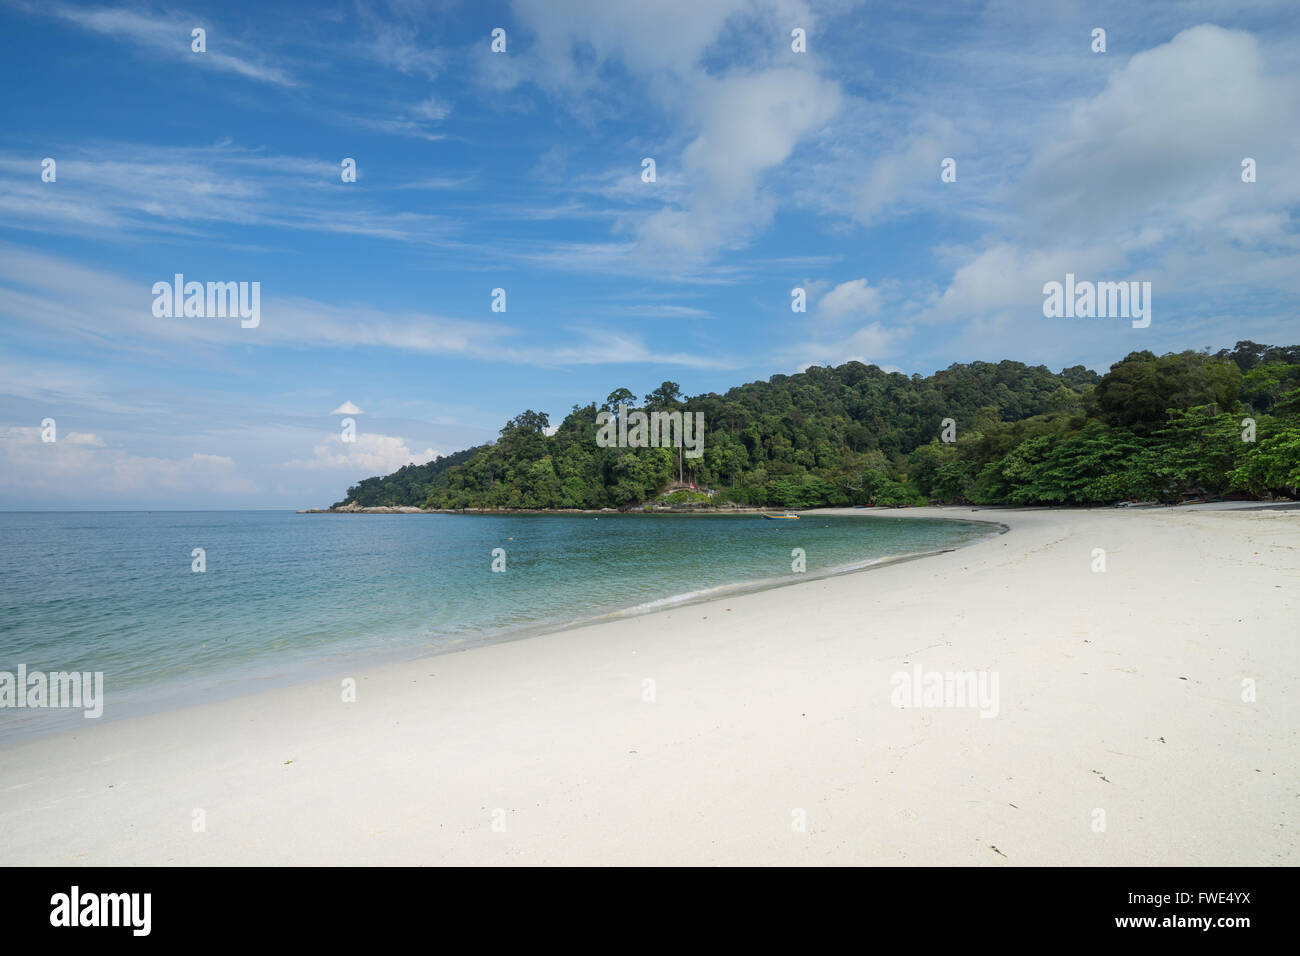 View of Teluk Nipah beach in Pangkor island, Malaysia. Stock Photo